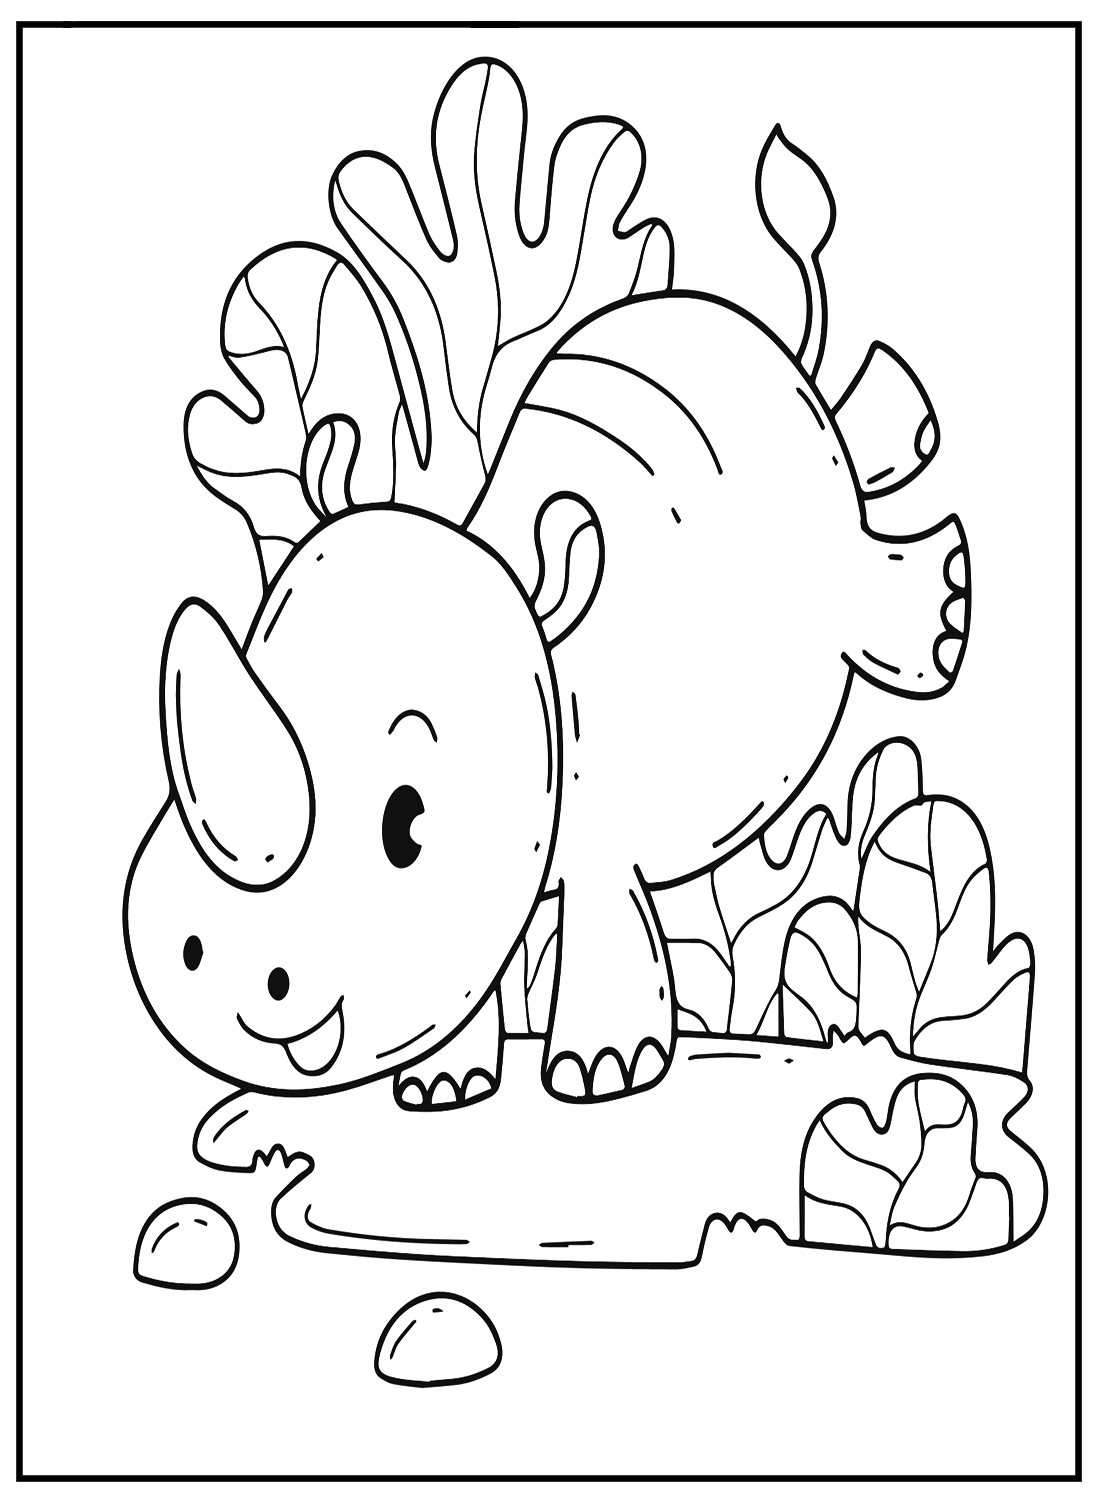 Kawaii Animal Drawing Coloring Pages